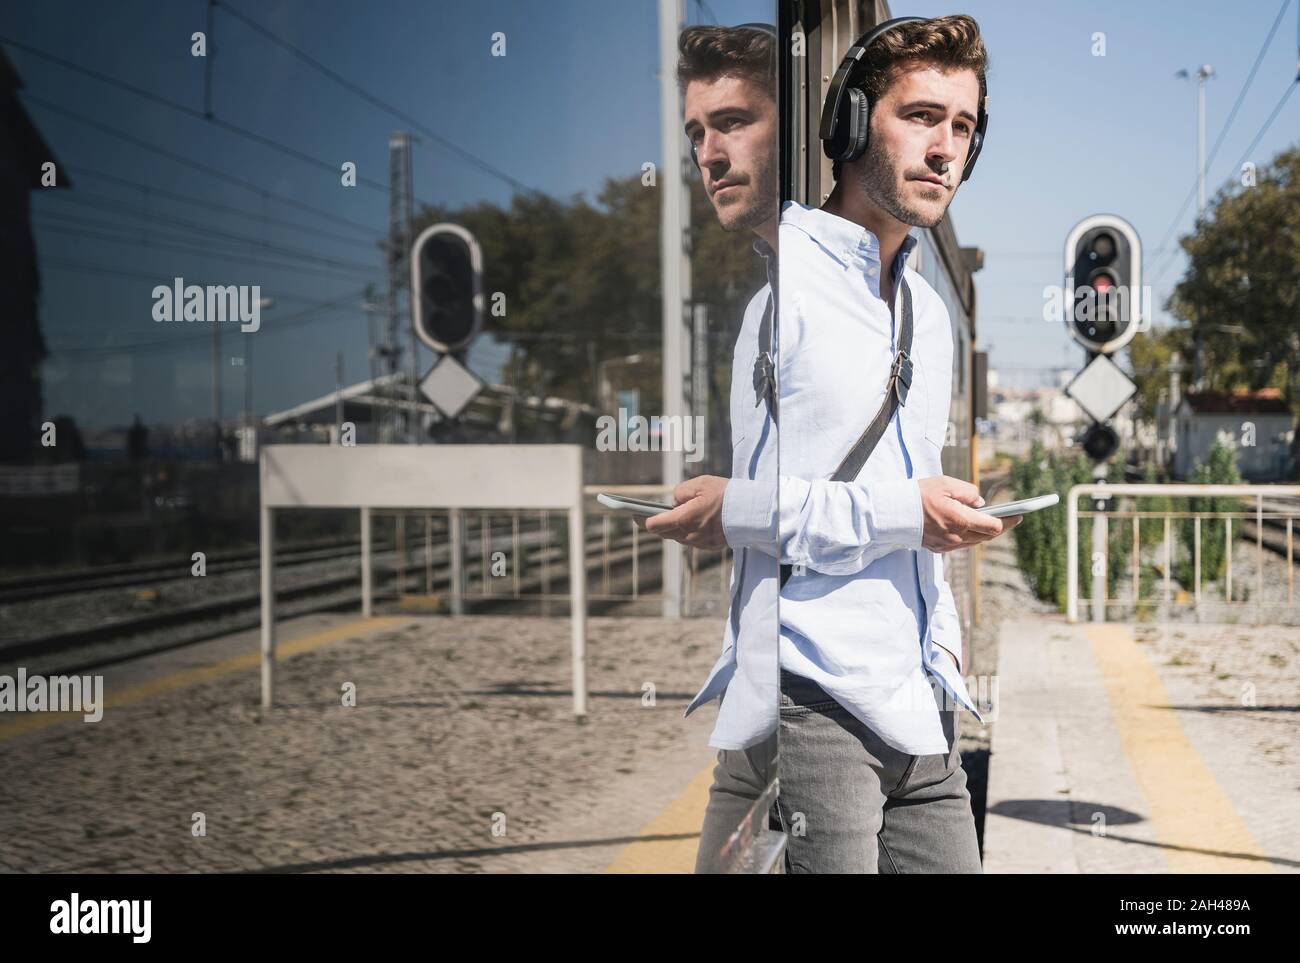 Young man with headphones and smartphone standing in train door Stock Photo